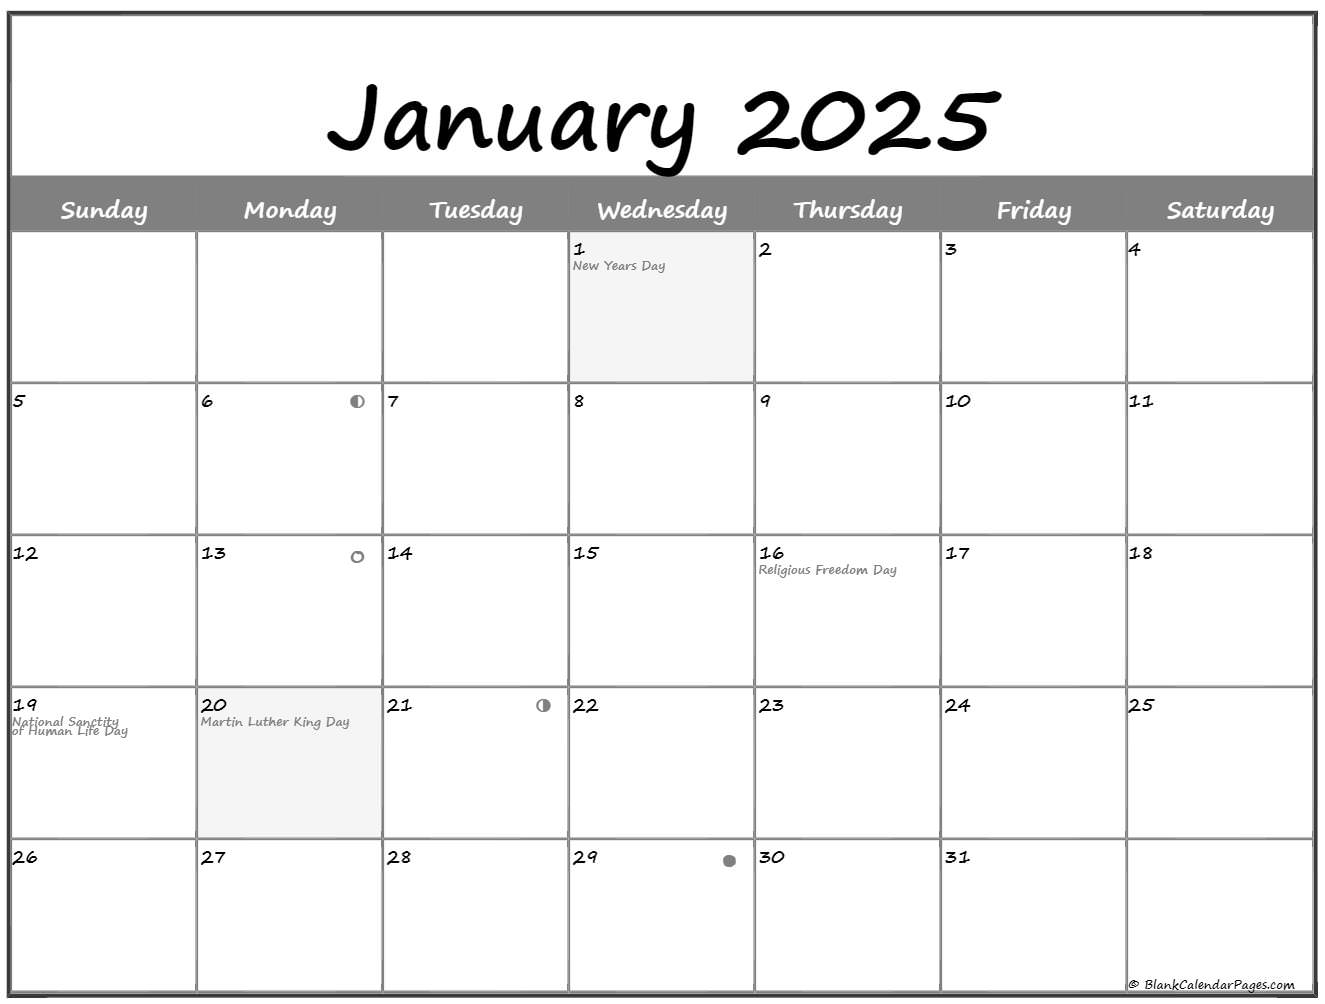 January 2025 Lunar Calendar Moon Phase Calendar